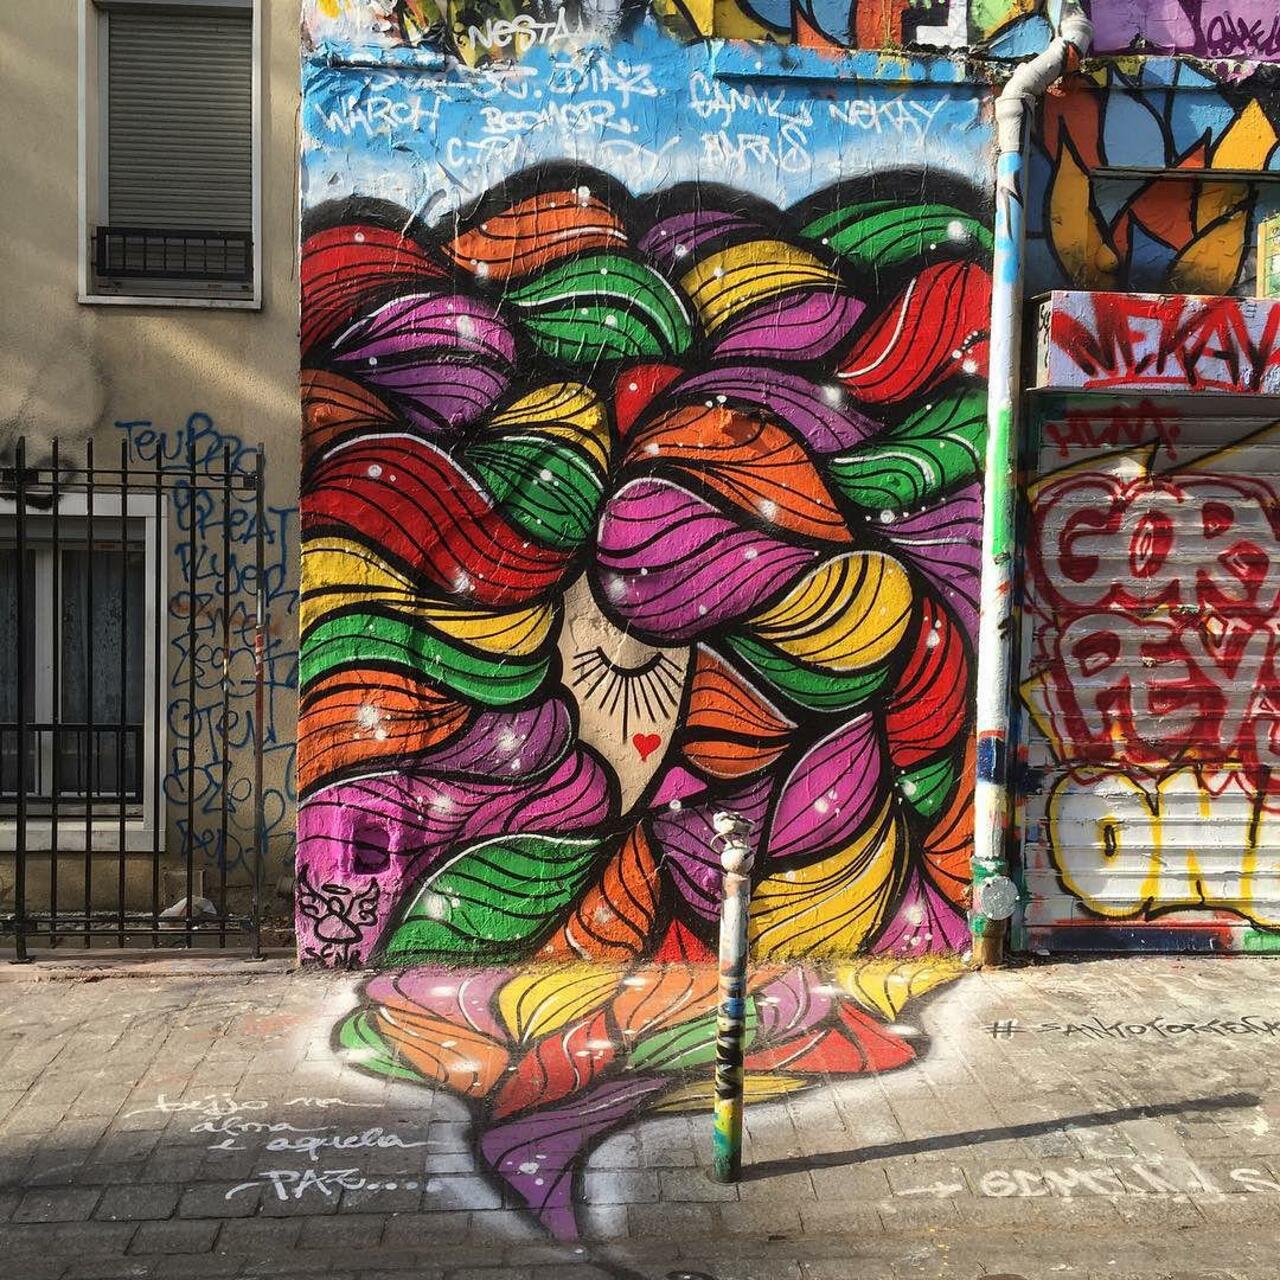 #Paris #graffiti photo by @ijustdontknow http://ift.tt/1PvrDeD #StreetArt http://t.co/PZRiTEW2I5